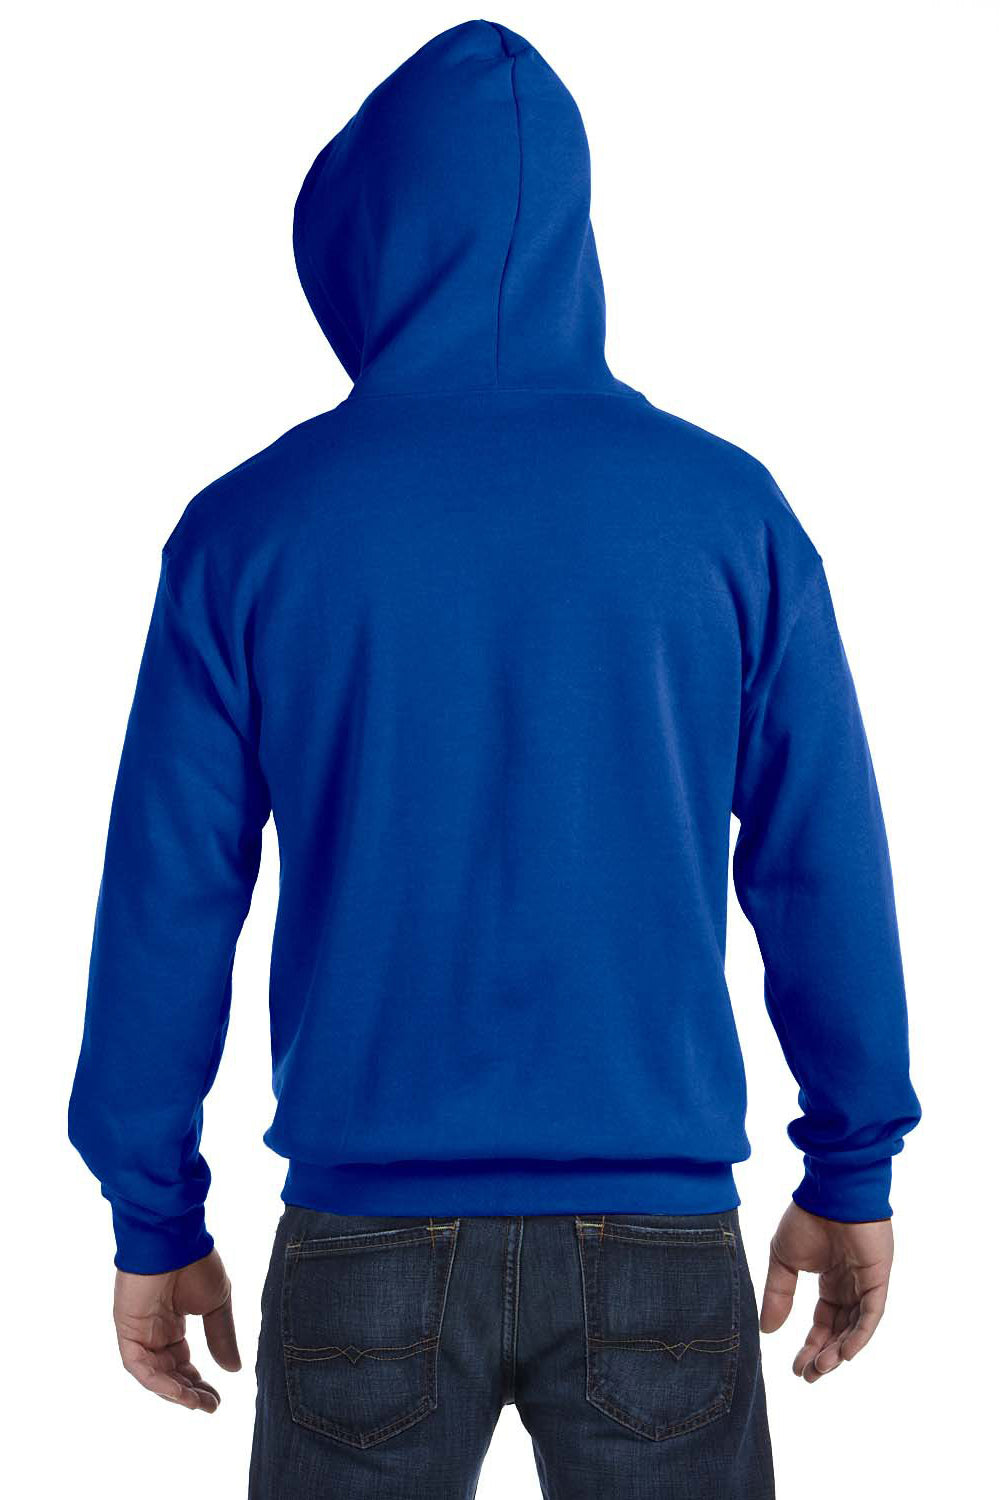 Gildan G186 Mens Full Zip Hooded Sweatshirt Hoodie Royal Blue Back